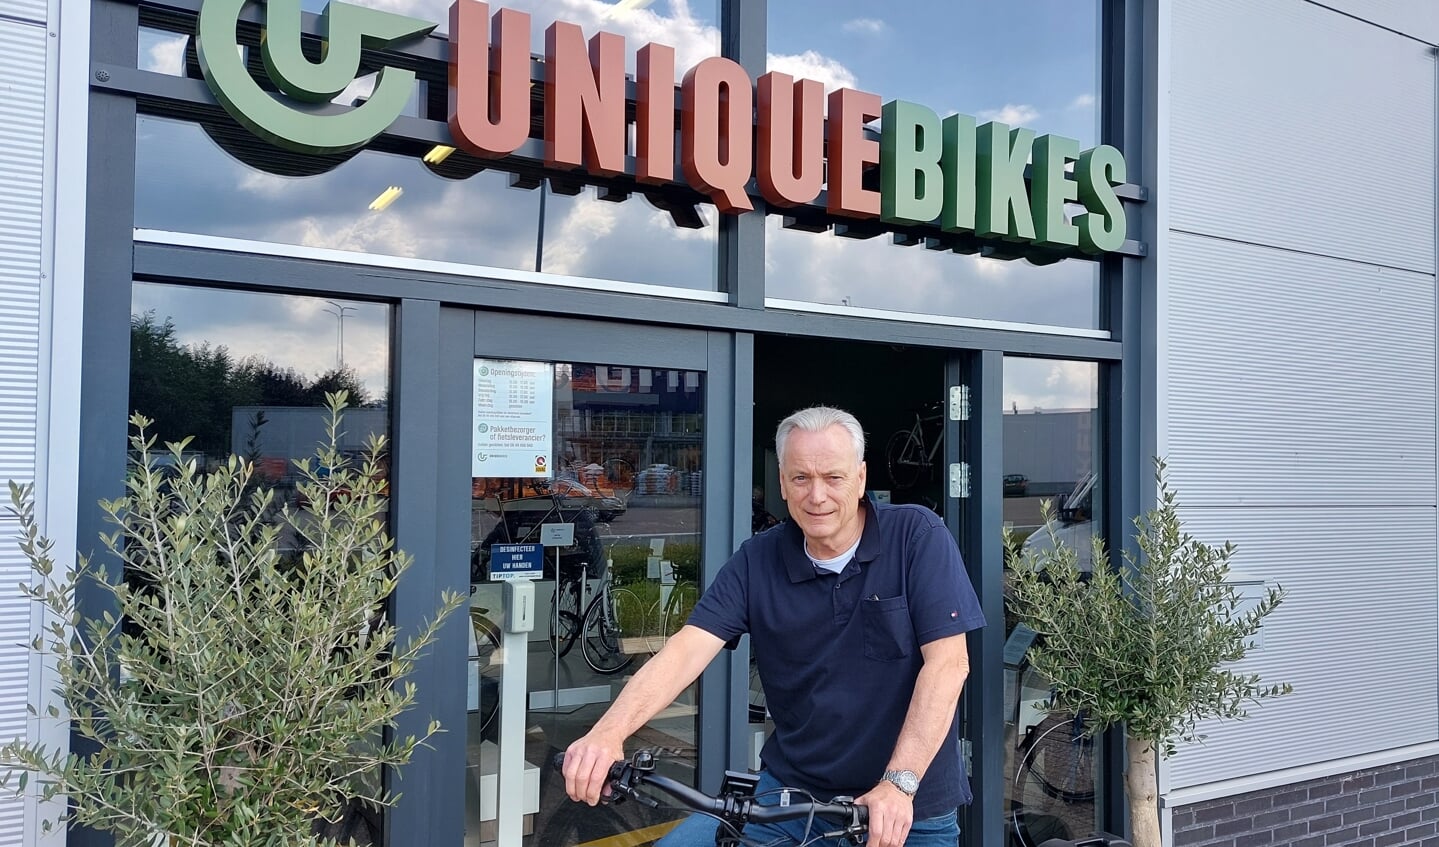  Raymond van Turnhout op een Huyser e-bike voor de showroom. Foto: Han van de Laar